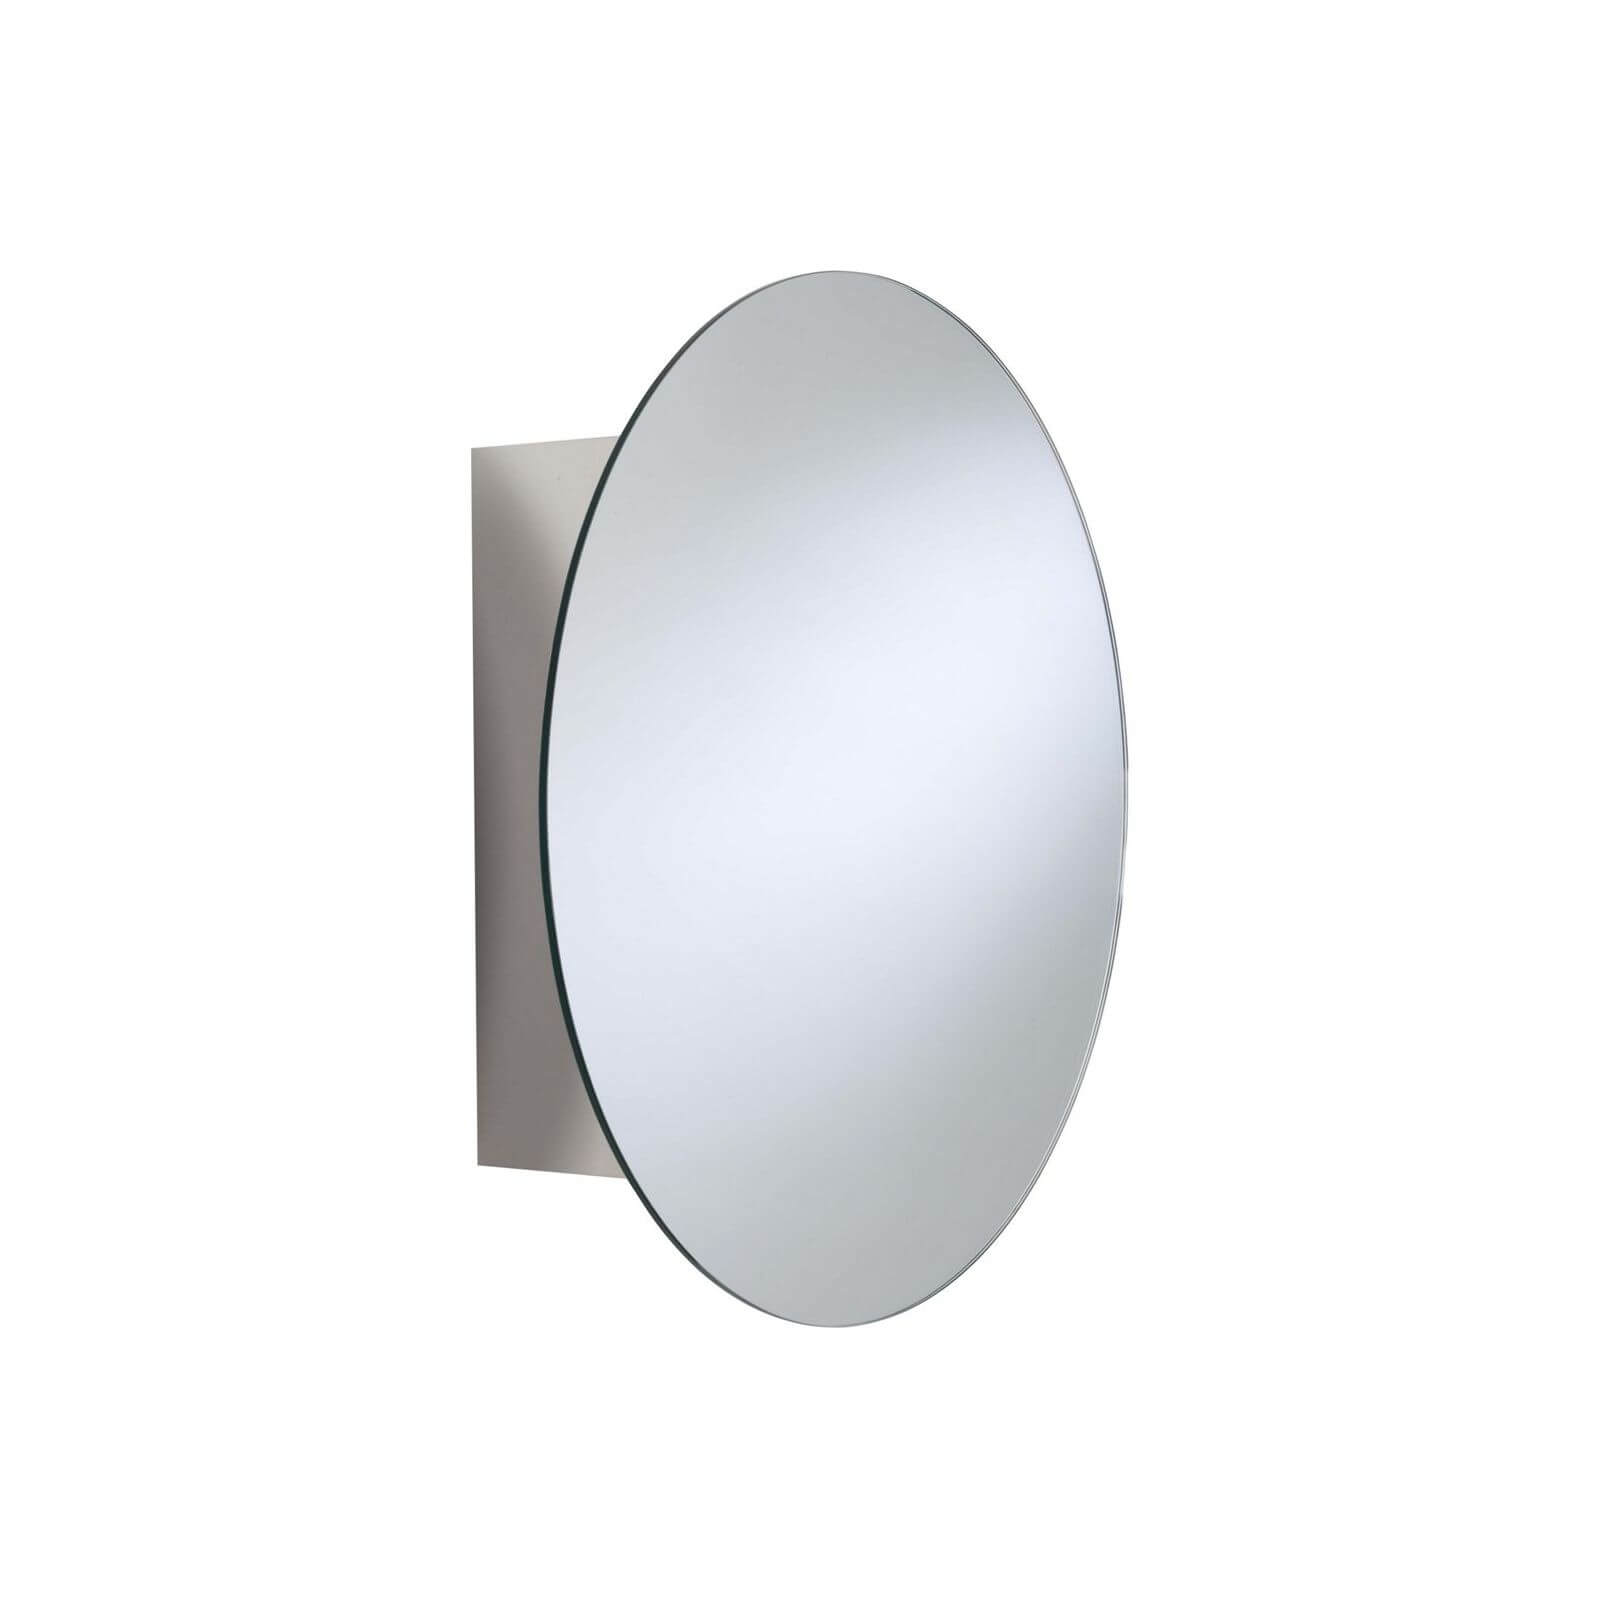 Croydex Missouri Round Mirror Door Cabinet - Stainless Steel